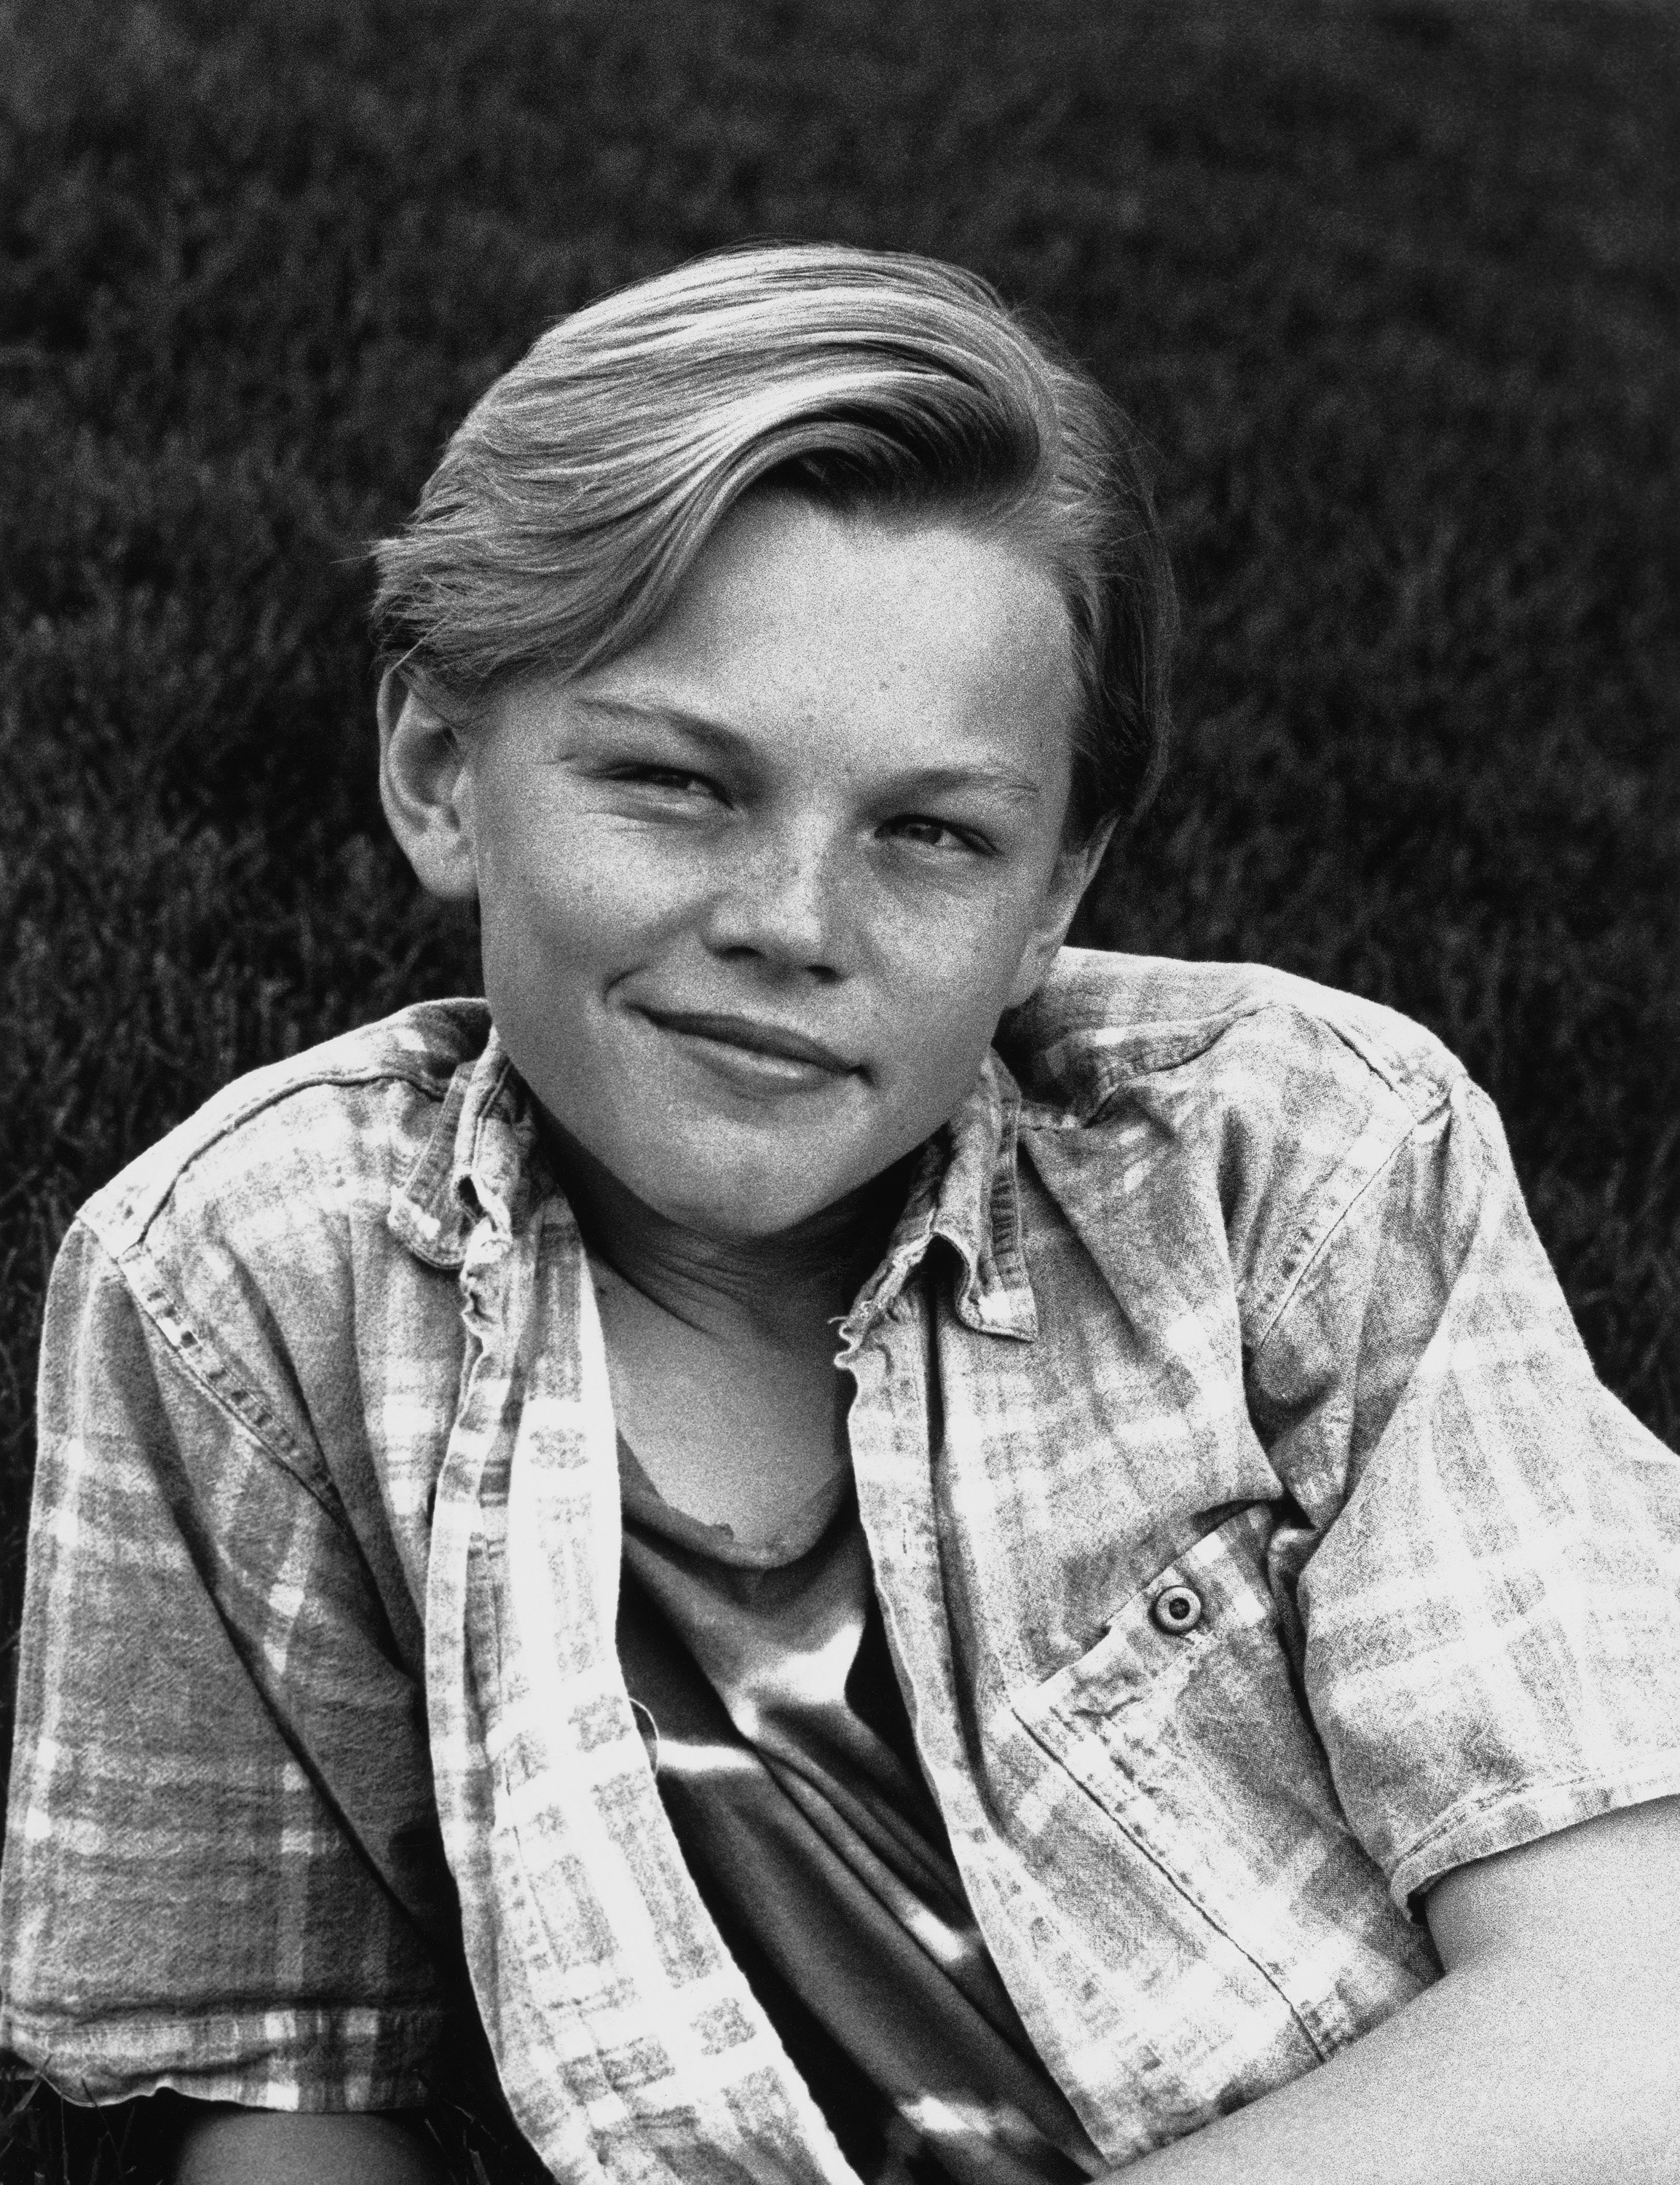 Le jeune garçon pose pour une photo, vers 1990 | Source : Getty Images